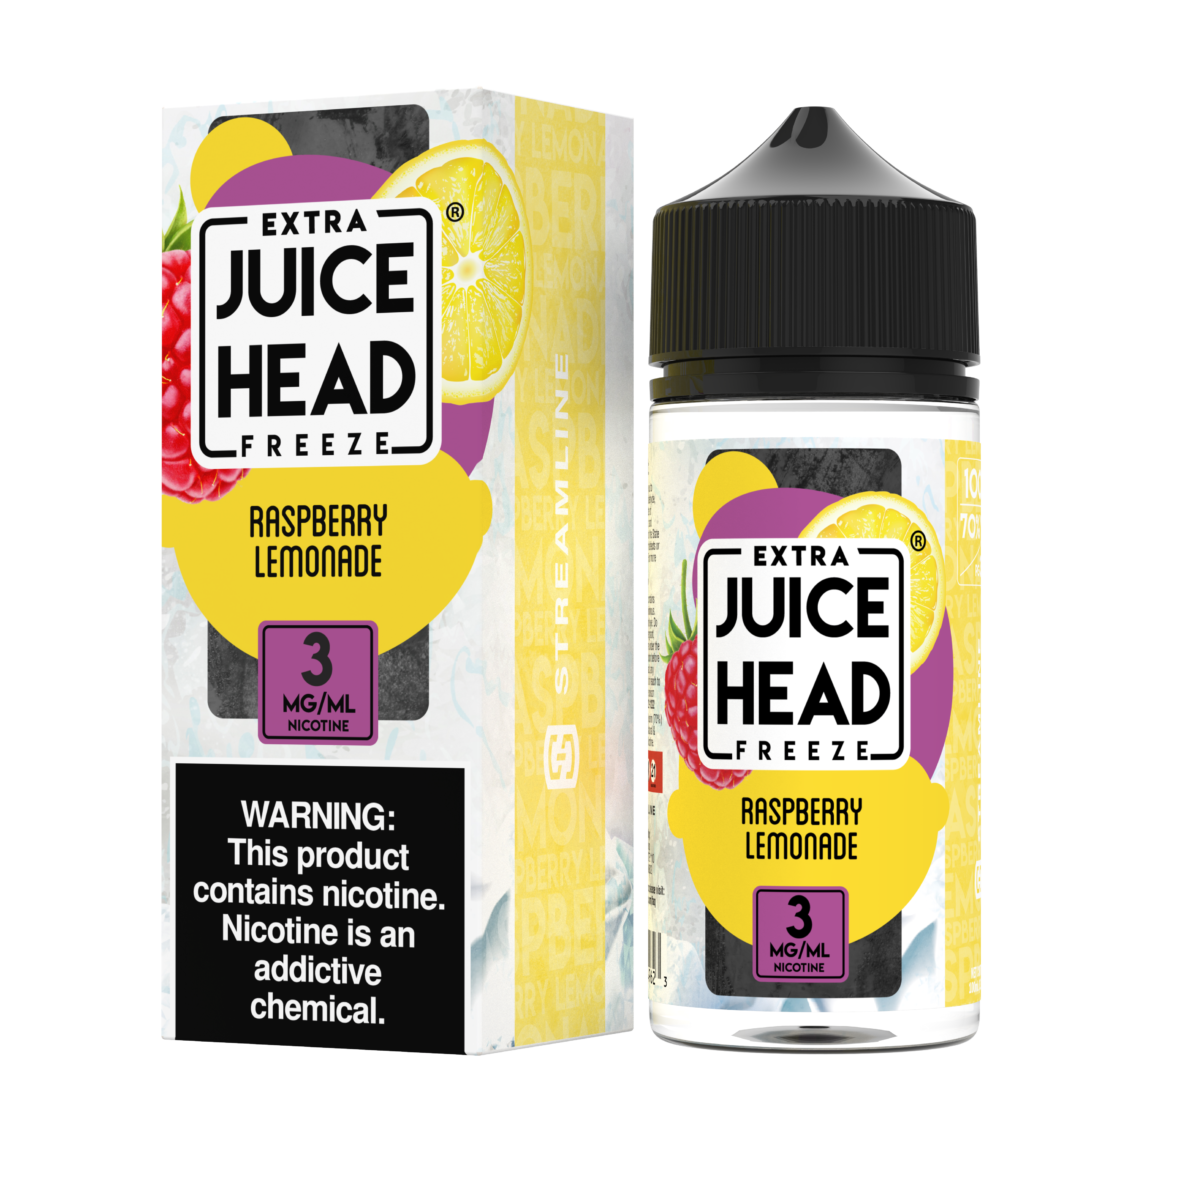 Raspberry Lemonade Freeze by Juice Head Series 100mL with Packaging